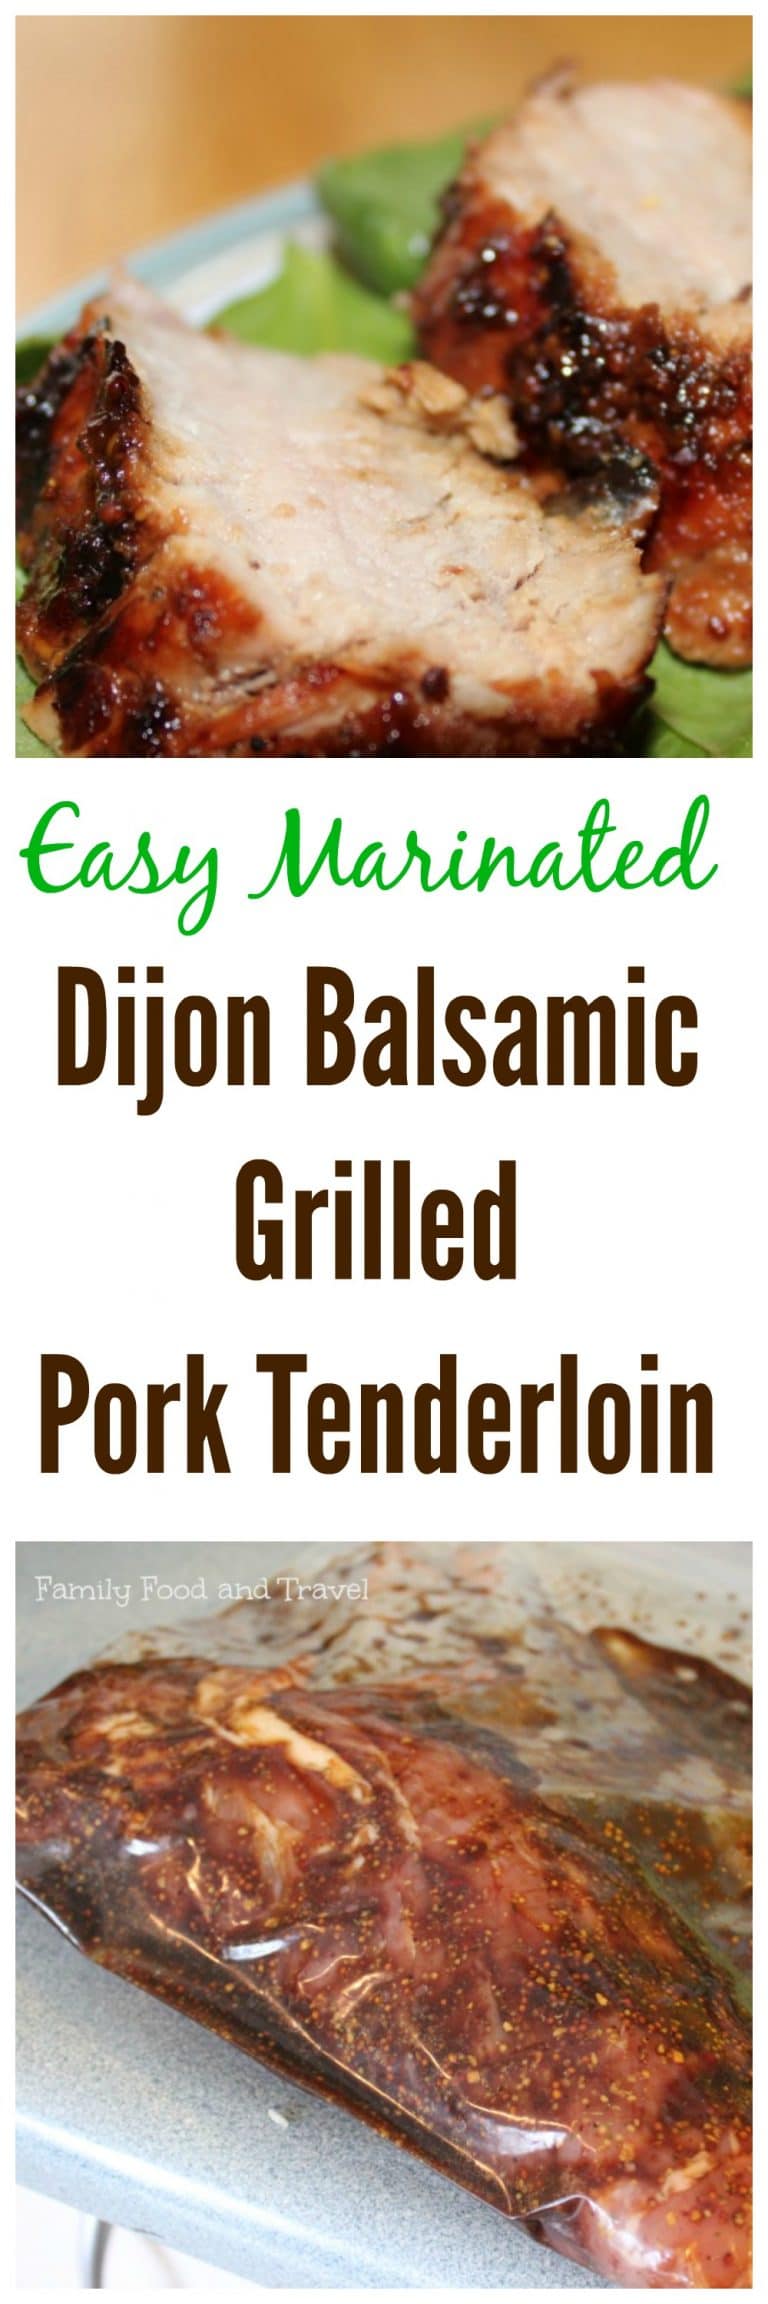 Delicious Dijon Balsamic Grilled Pork Tenderloin with Easy Marinade